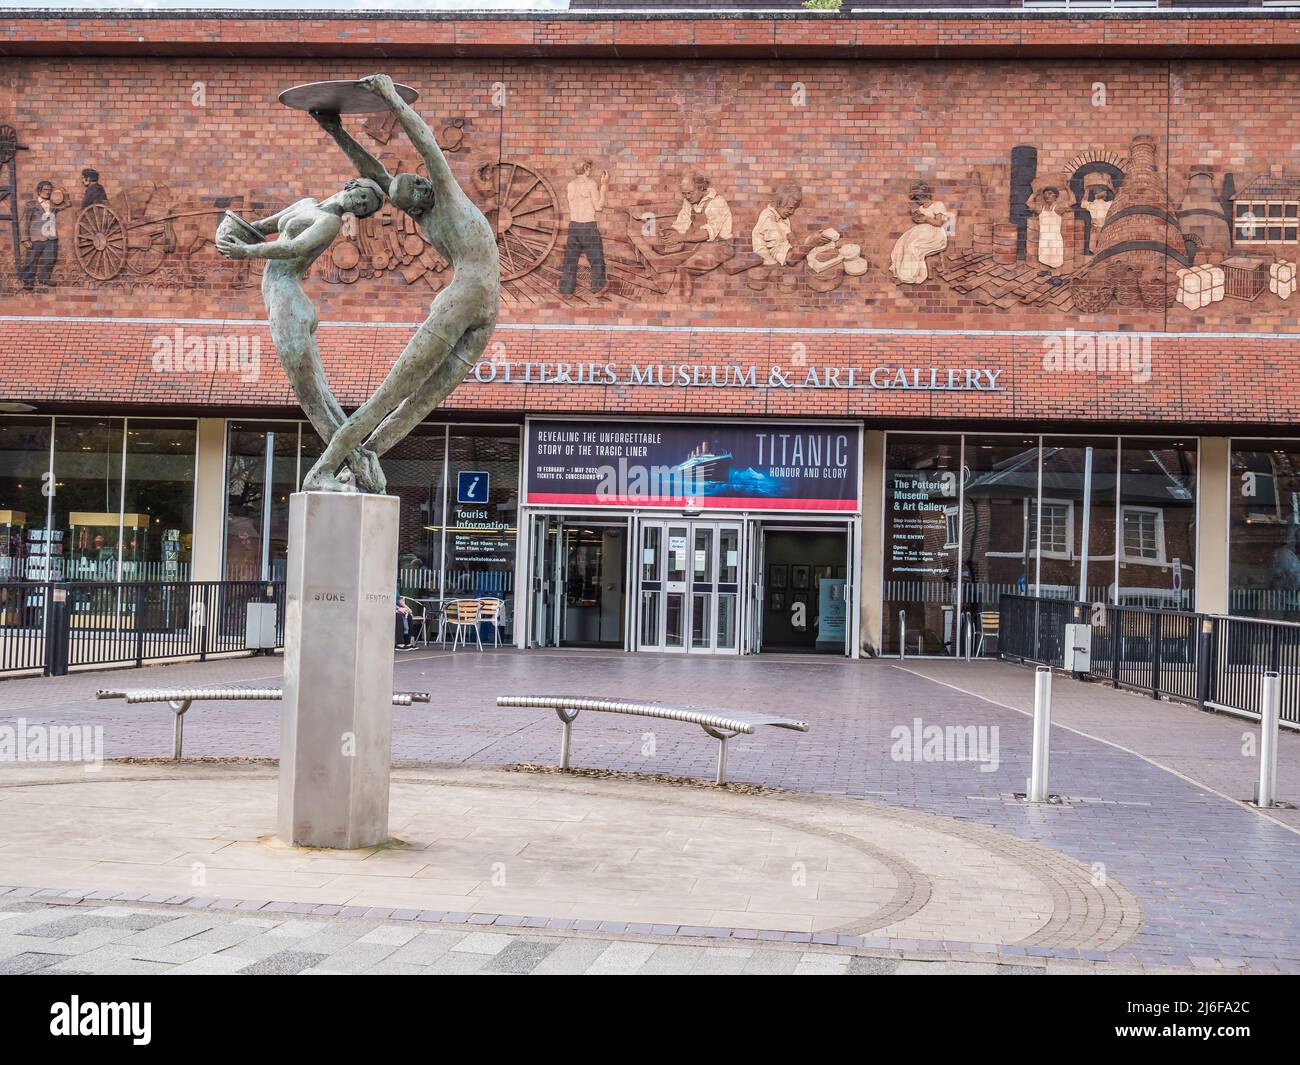 Dies ist das Töpfermuseum und die Kunstgalerie in Stoke on Trent, das Museum ist berühmt für seine Keramiksammlung und ein Spitfire-Flugzeug des Zweiten Weltkriegs Stockfoto